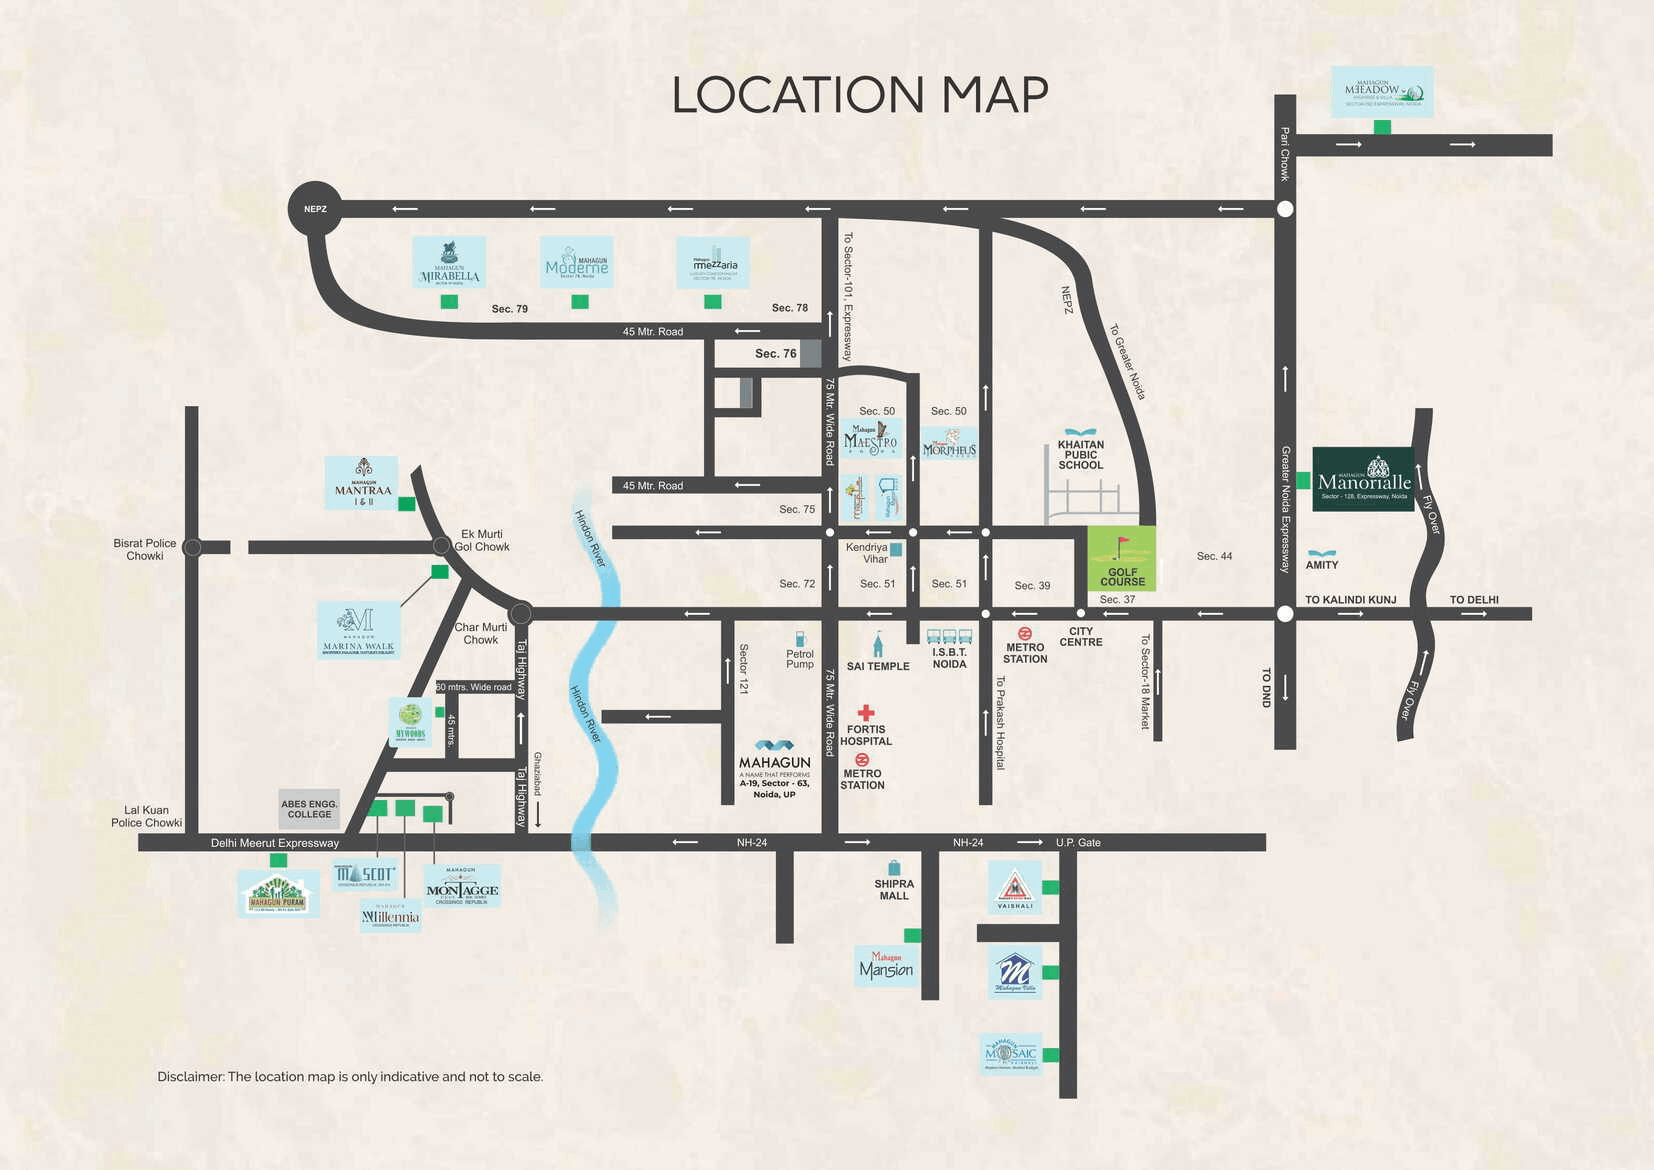 Mahagun Manorialle - location Map